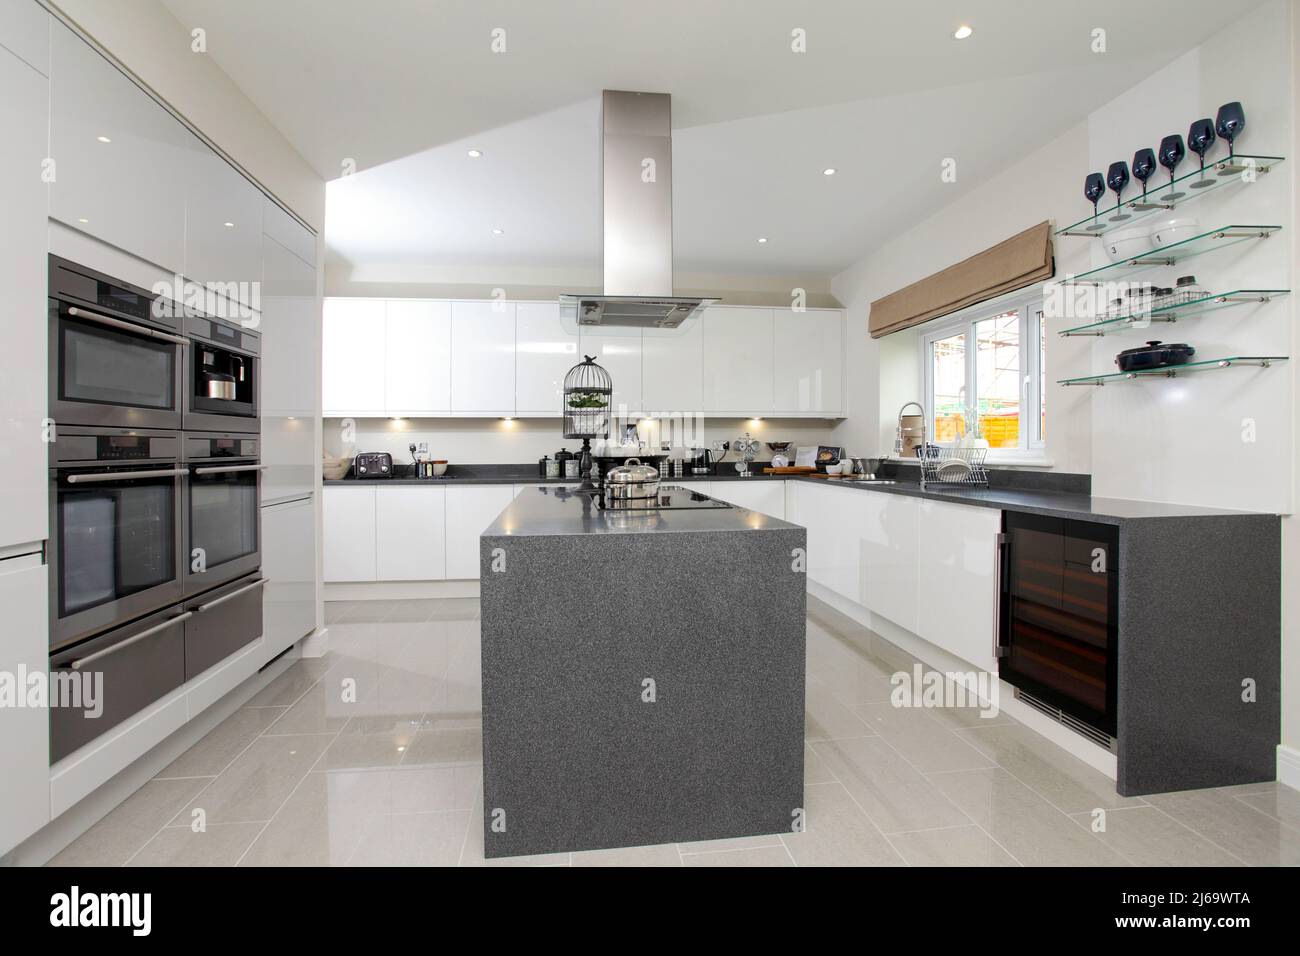 Cocina en casa de nueva construcción, isla central y encimeras de granito gris compuesto de cuarzo, ultra moderno. Foto de stock